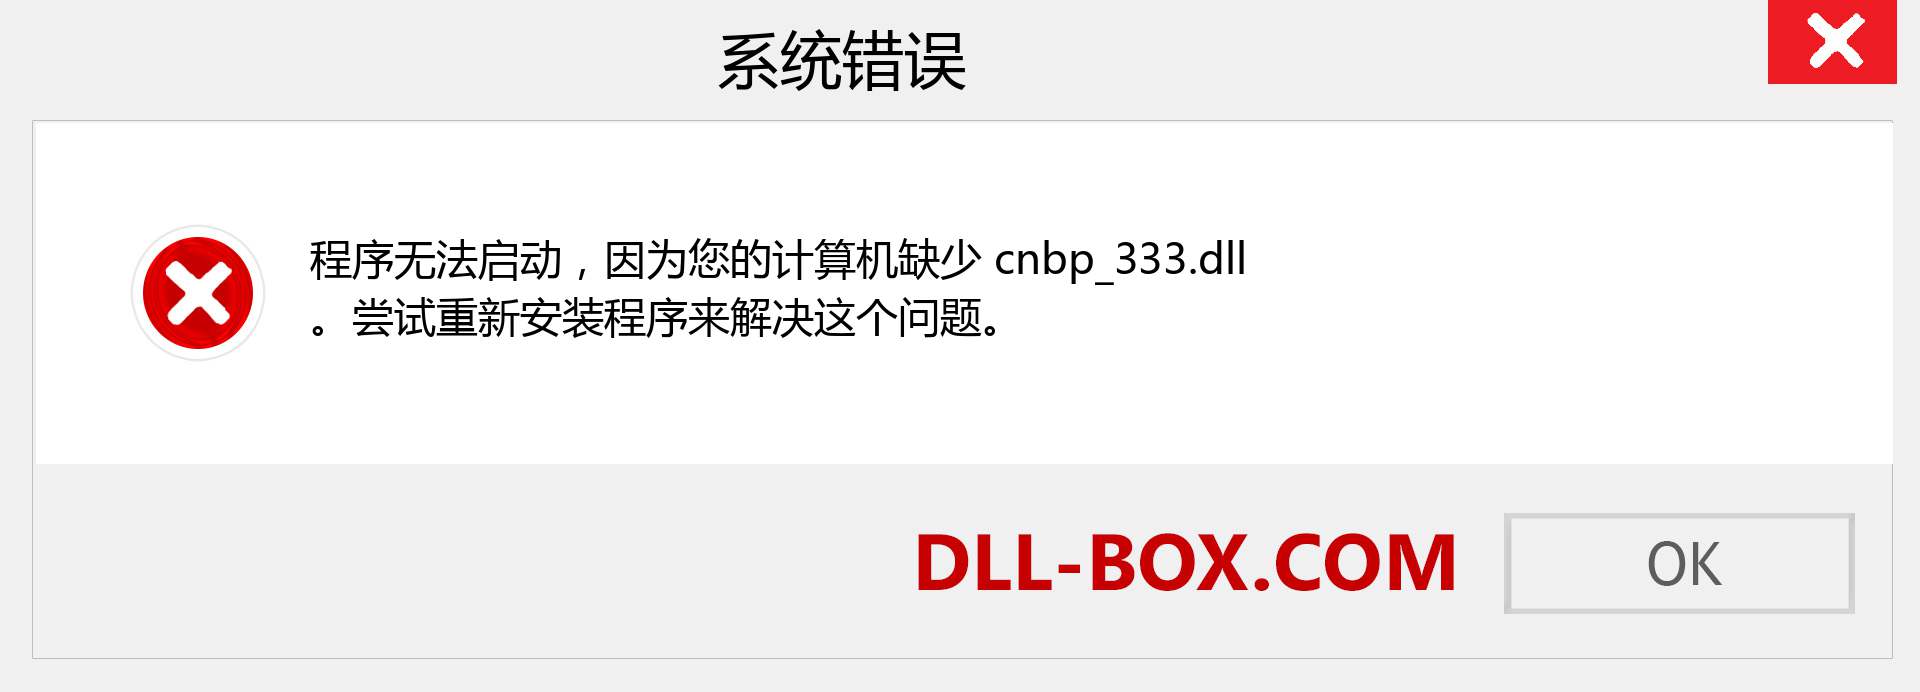 cnbp_333.dll 文件丢失？。 适用于 Windows 7、8、10 的下载 - 修复 Windows、照片、图像上的 cnbp_333 dll 丢失错误